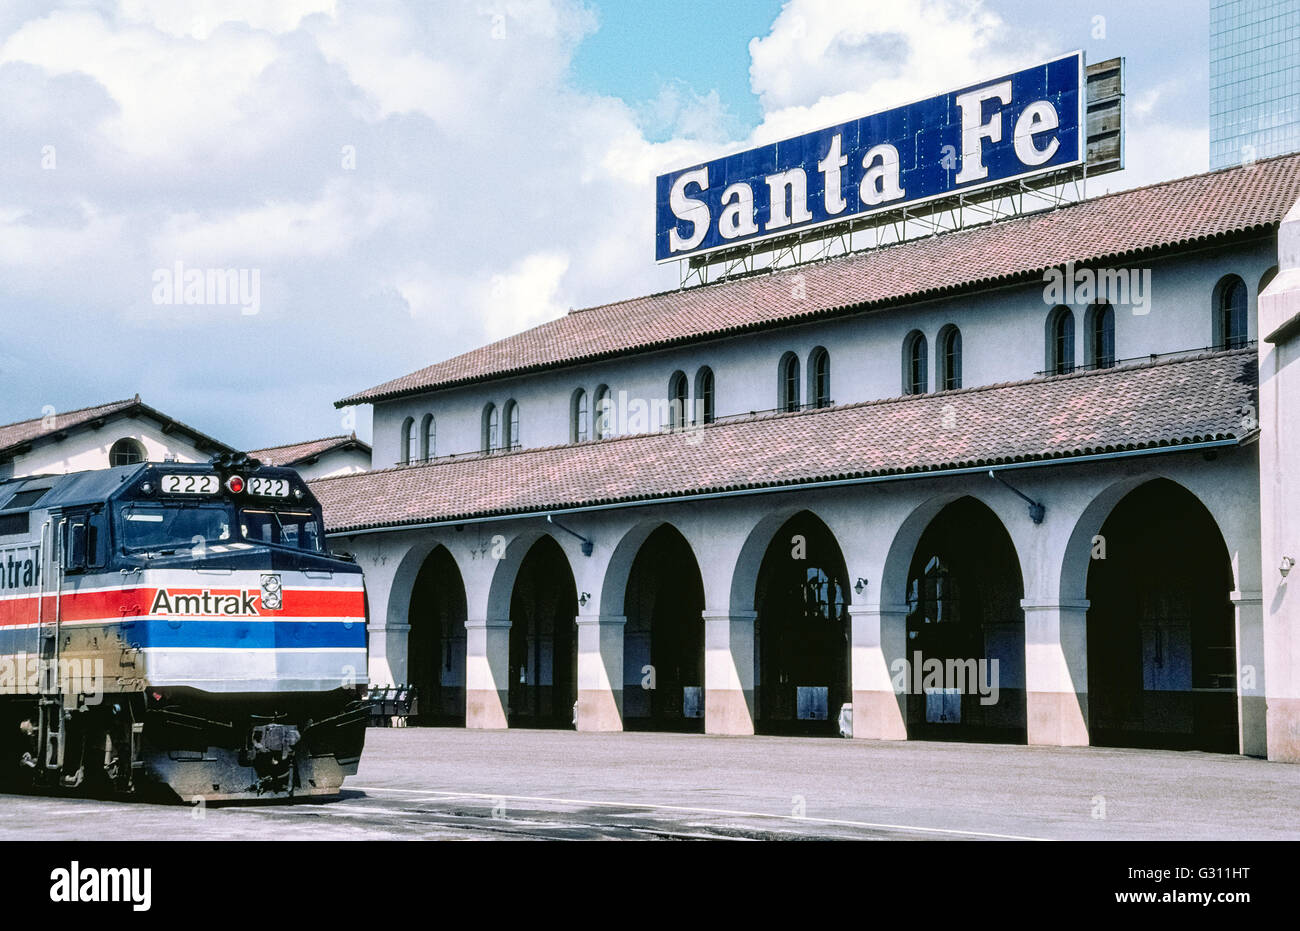 Le Santa Fe Depot est une ancienne station de train qui a ouvert en 1915 comme l'extrémité sud de l'Atchison, Topeka and Santa Fe Railway dans le centre-ville de San Diego, Californie, USA. Reconnue pour son style néo-Mission de l'architecture, le dépôt maintenant sert des chariots de banlieue ainsi qu'Amtrak, le National Railroad Passenger avec des trains qui vont du nord de Los Angeles et de destinations. Banque D'Images